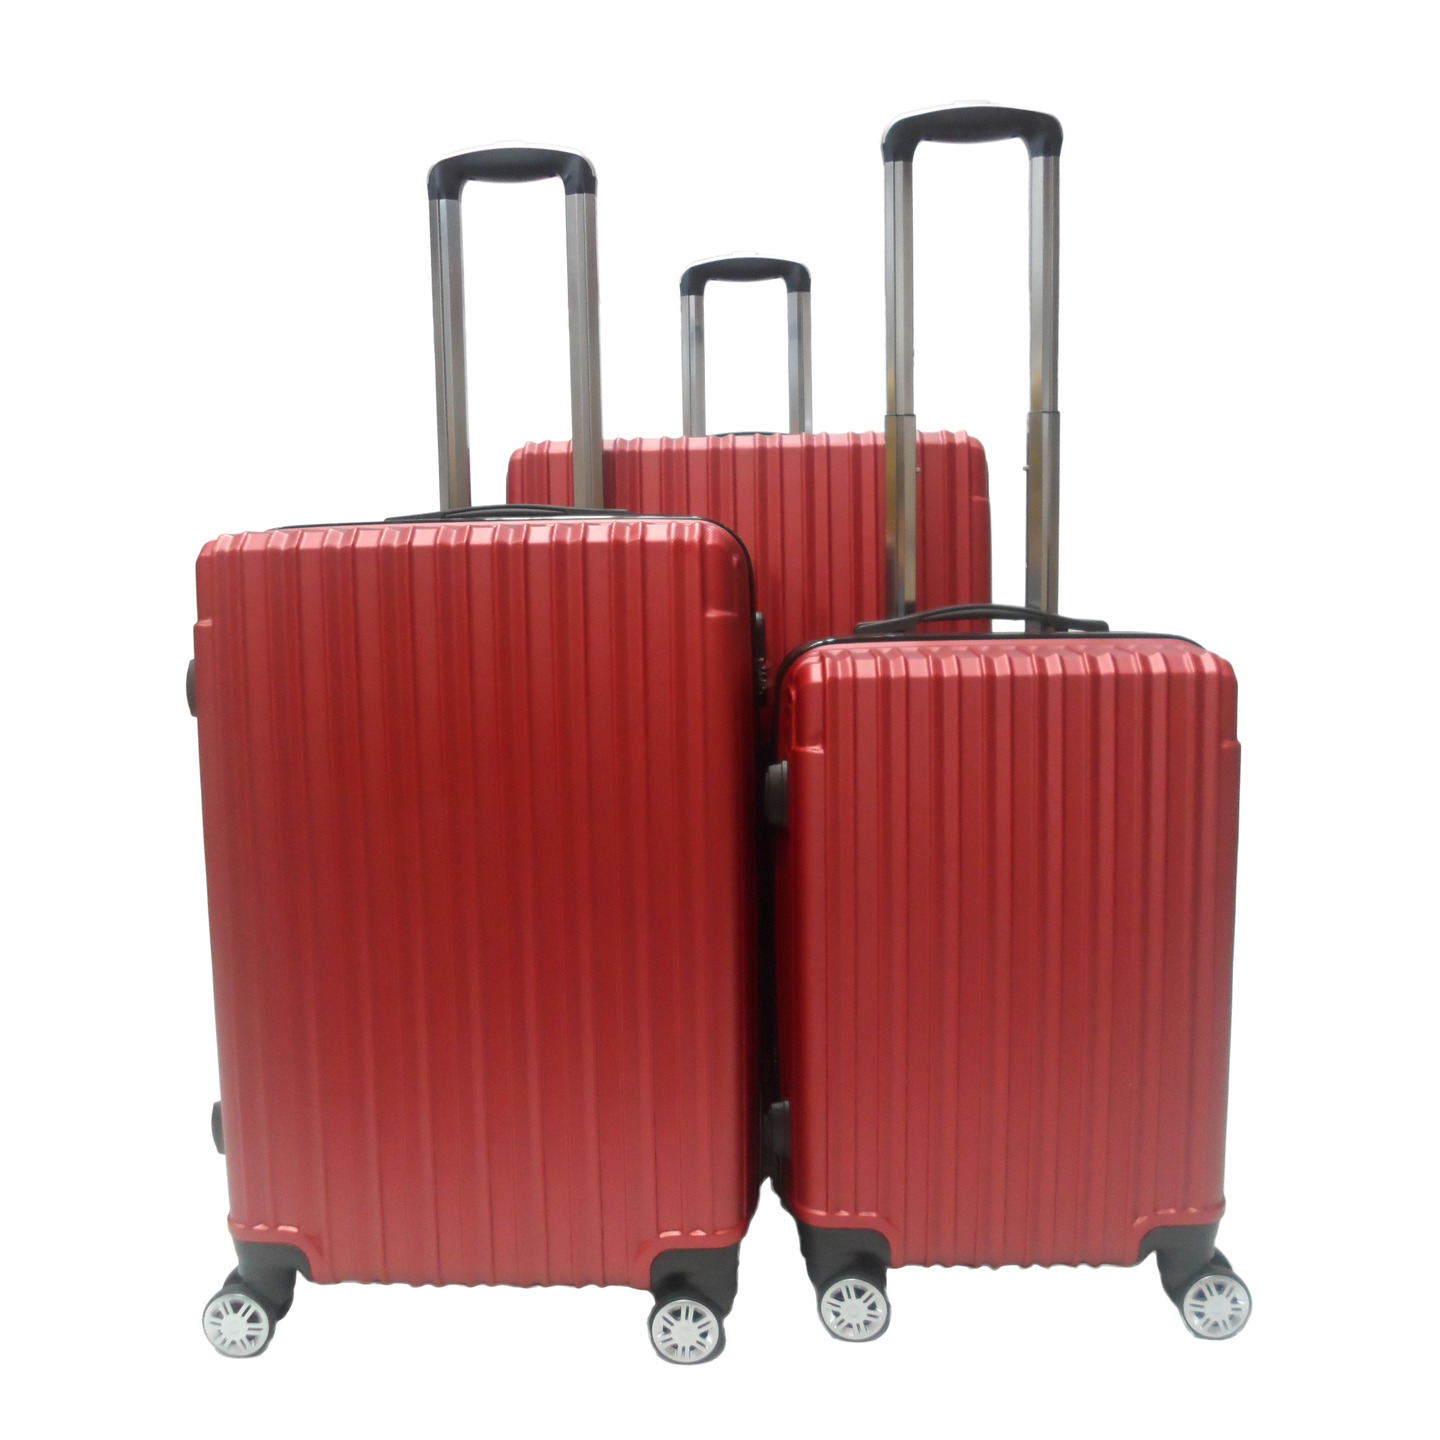 RV-60 Elegant Hard BOx Luggage - Red 20 inch,24 inch, 28 inch